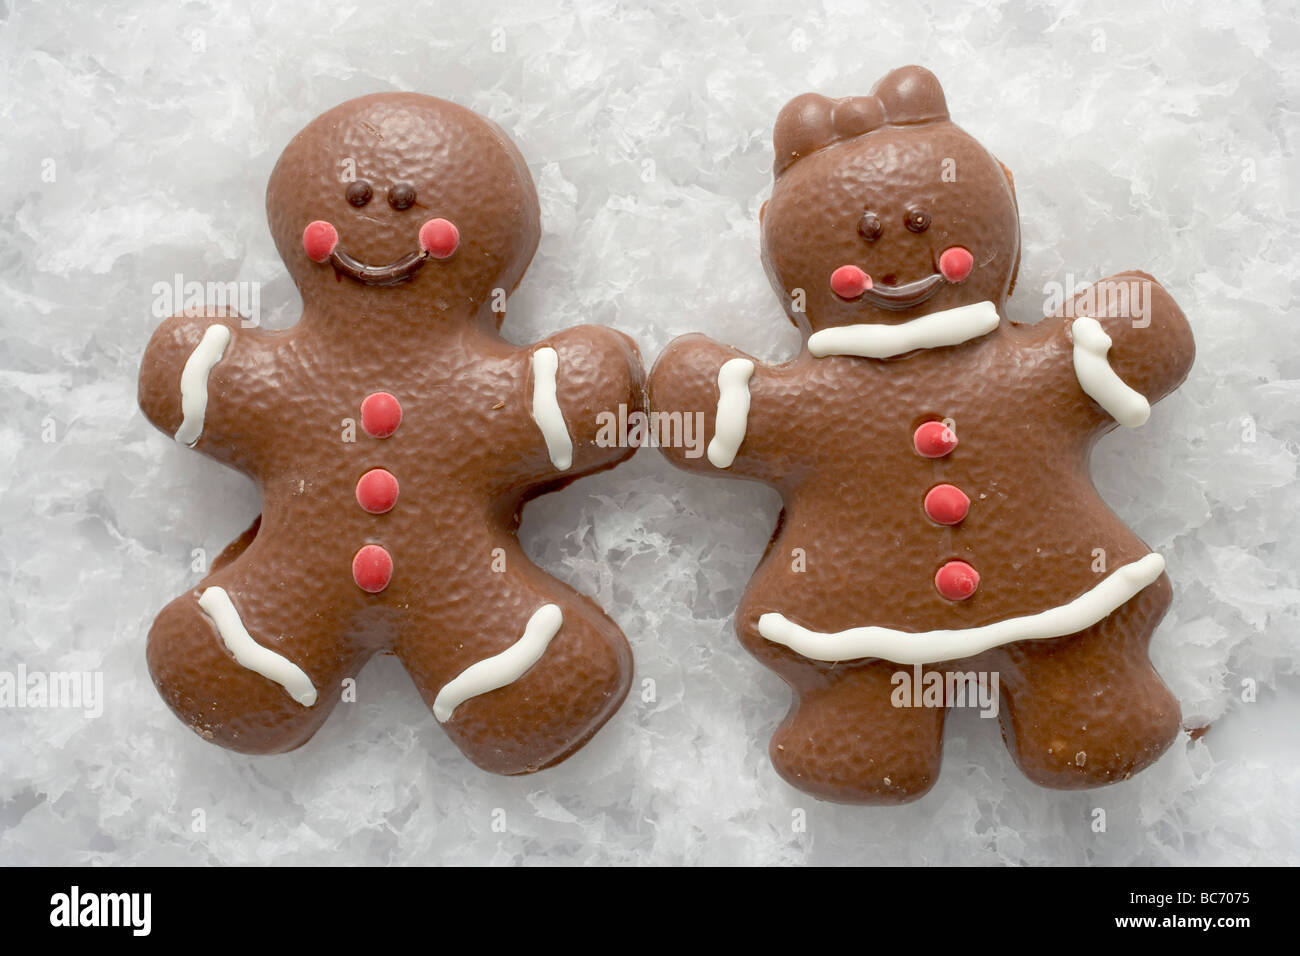 Christmassy deux personnes d'épices enrobés de chocolat dans la neige - Banque D'Images